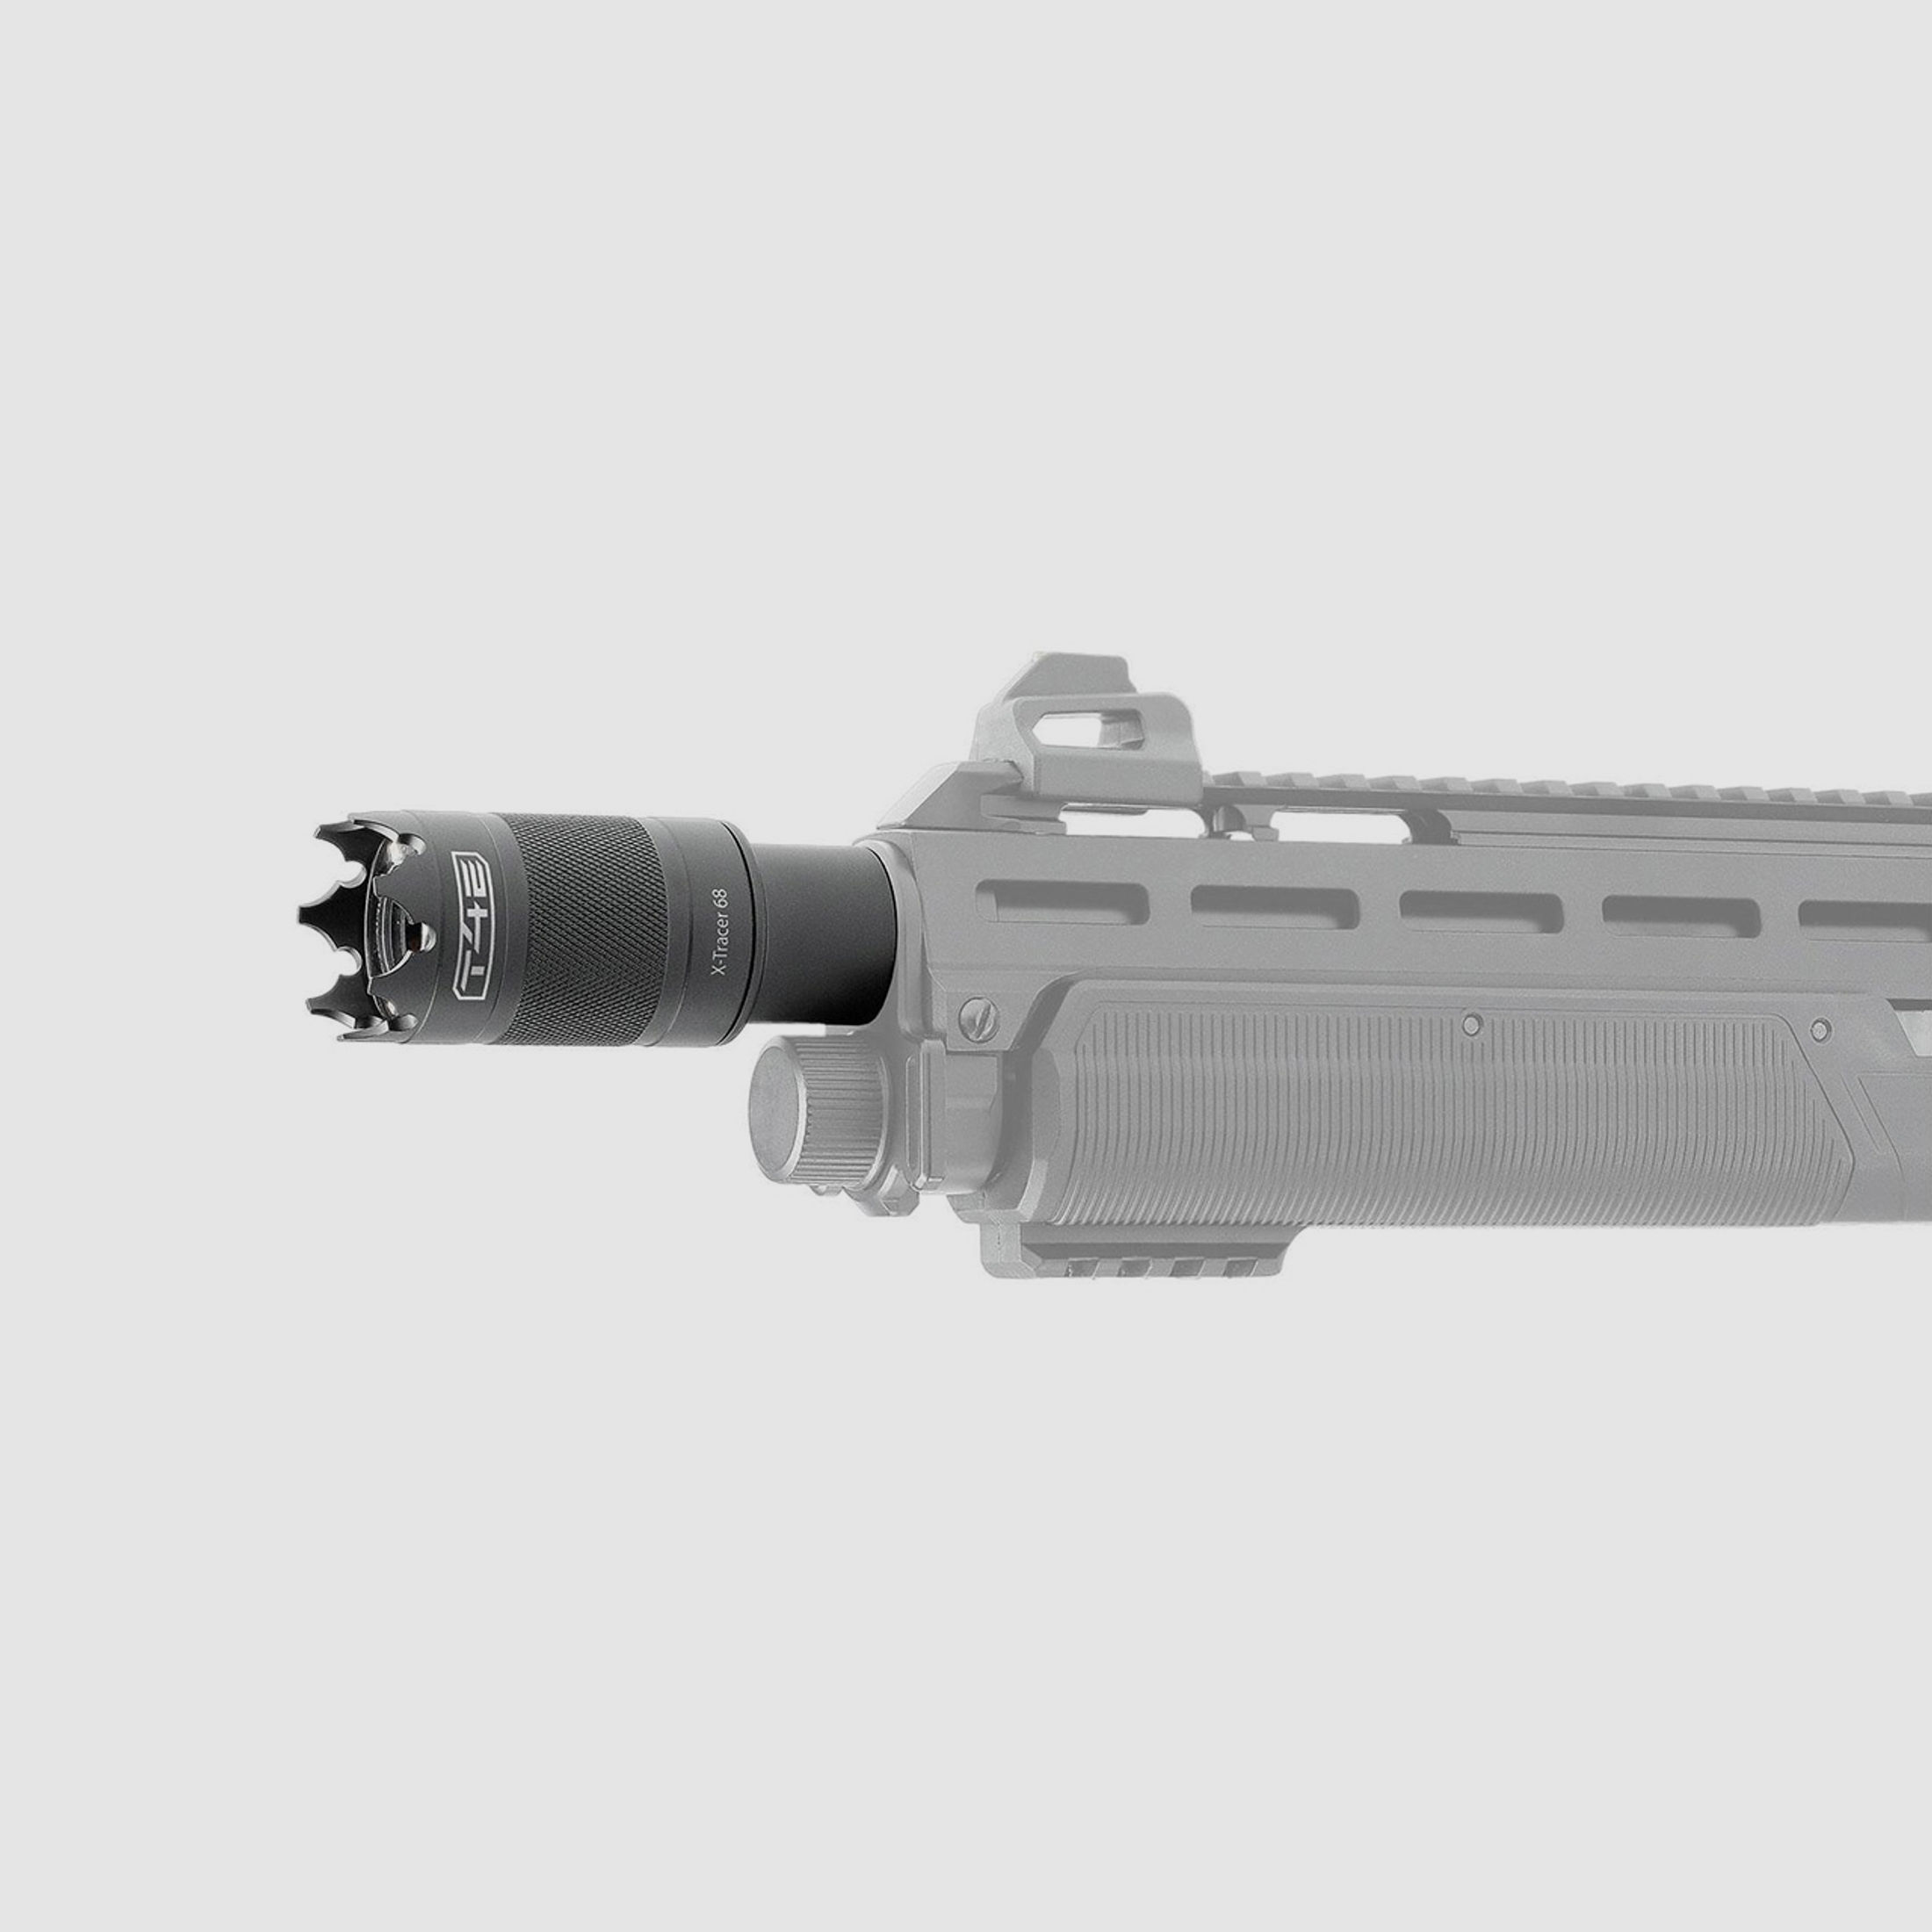 LED UV-Tracer T4E X-Tracer 68 fĂĽr CO2 Markierer Home Defense Pump Action Gewehr Umarex HDX 68